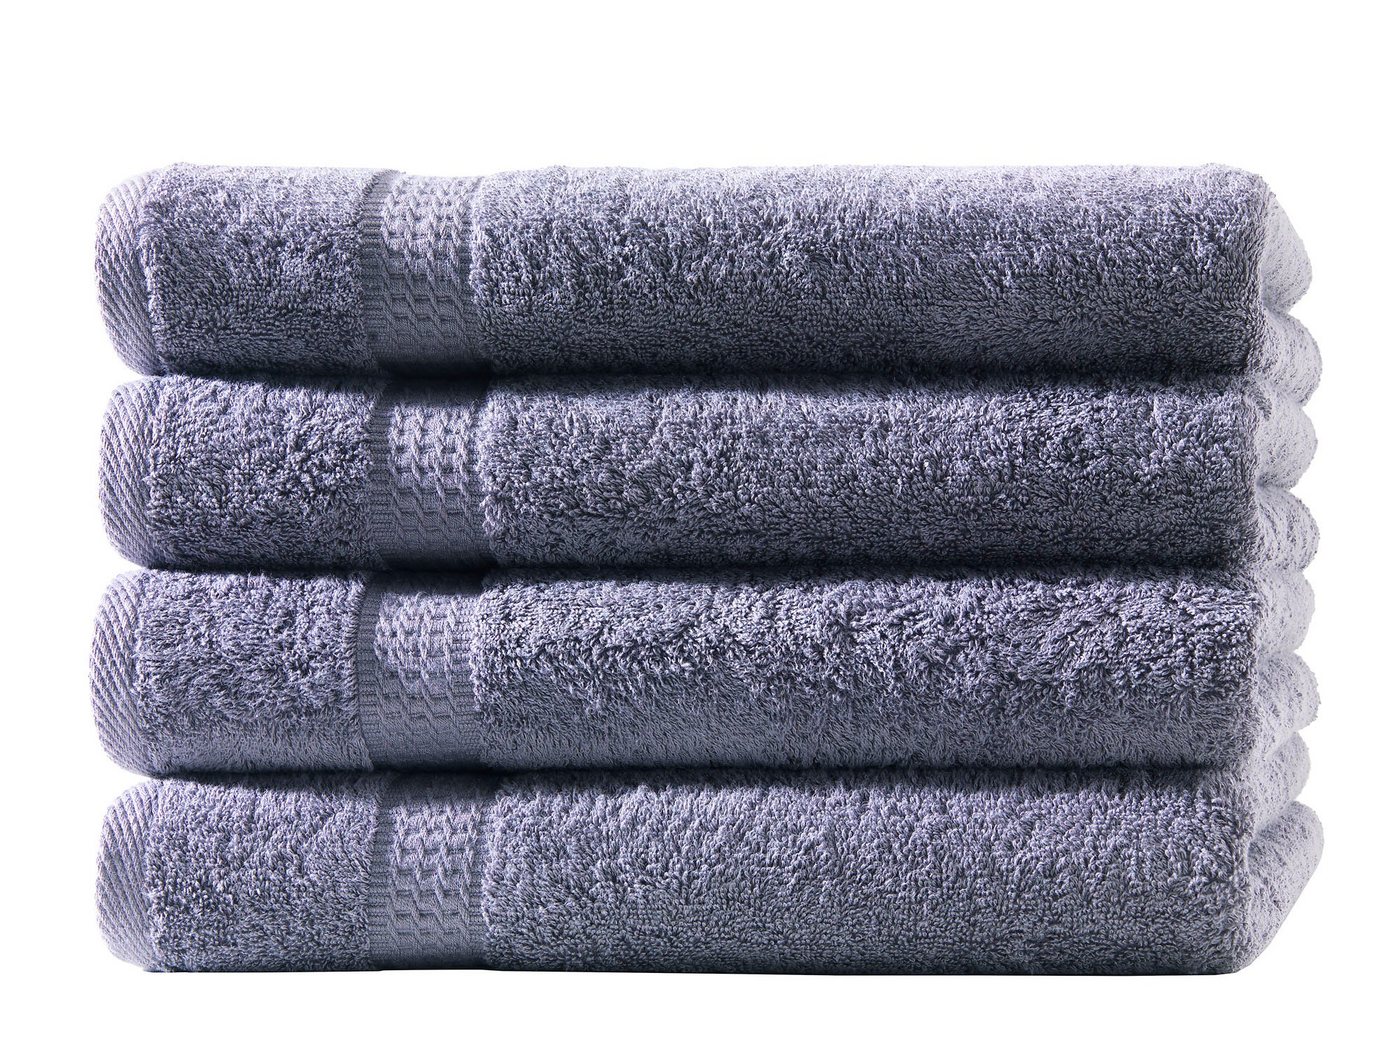 Hometex Premium Textiles Handtuch in Premium Qualität 500 g/m², Feinster Frottier-Stoff 100% Baumwolle, 4x Handtuch, Kuschelig weich, saugfähig, Extra schwere, flauschige Hotel-Qualität von Hometex Premium Textiles